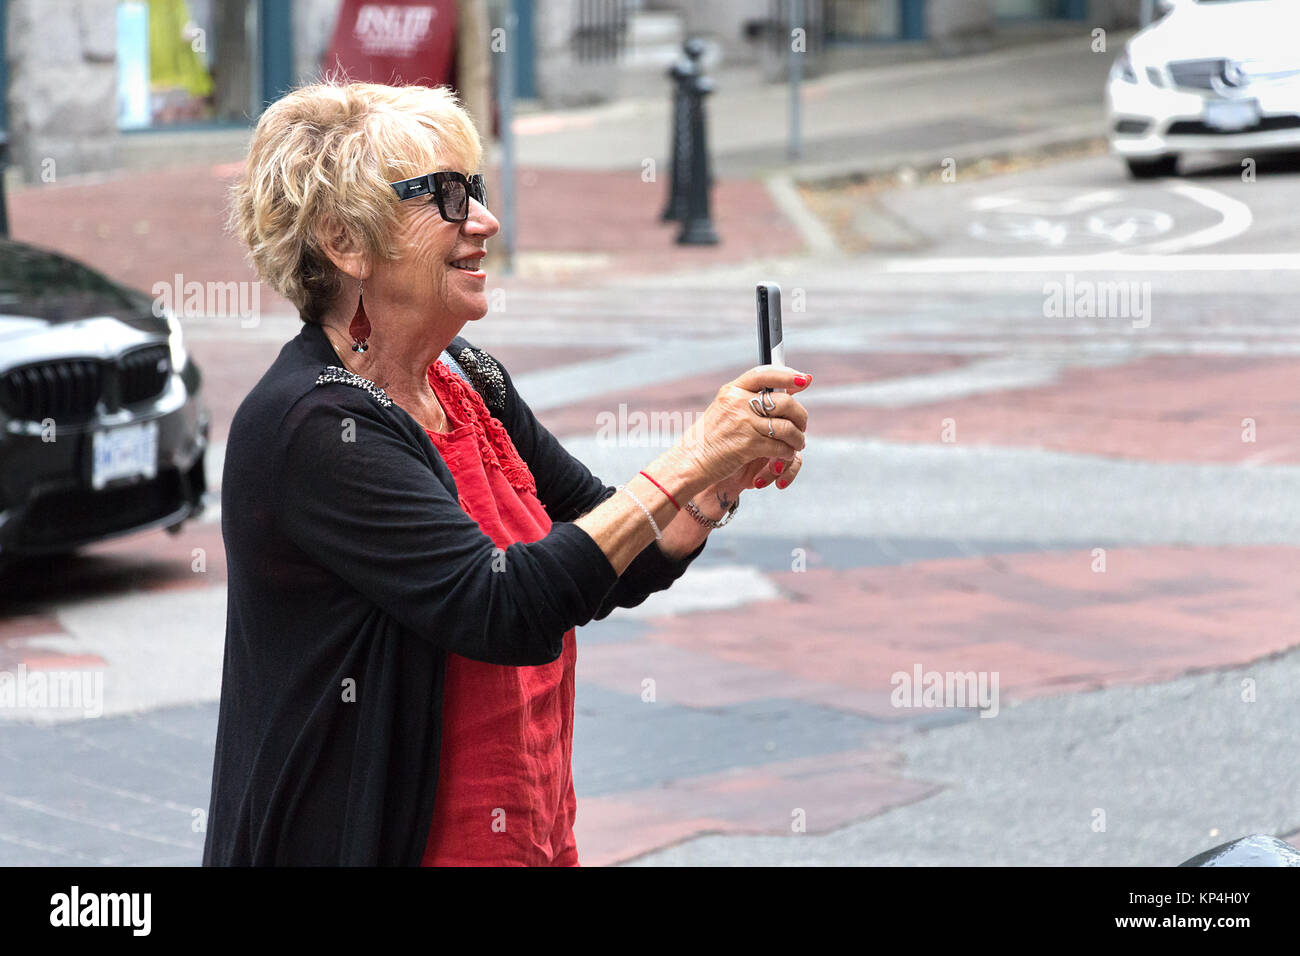 Vancouver, Kanada - August 31th, 2017: Eine ältere Frau ist das Aufnehmen von Fotos mit Ihrem mobilen trägt Prada Sonnenbrille auf der Straße in Vancouver. Stockfoto